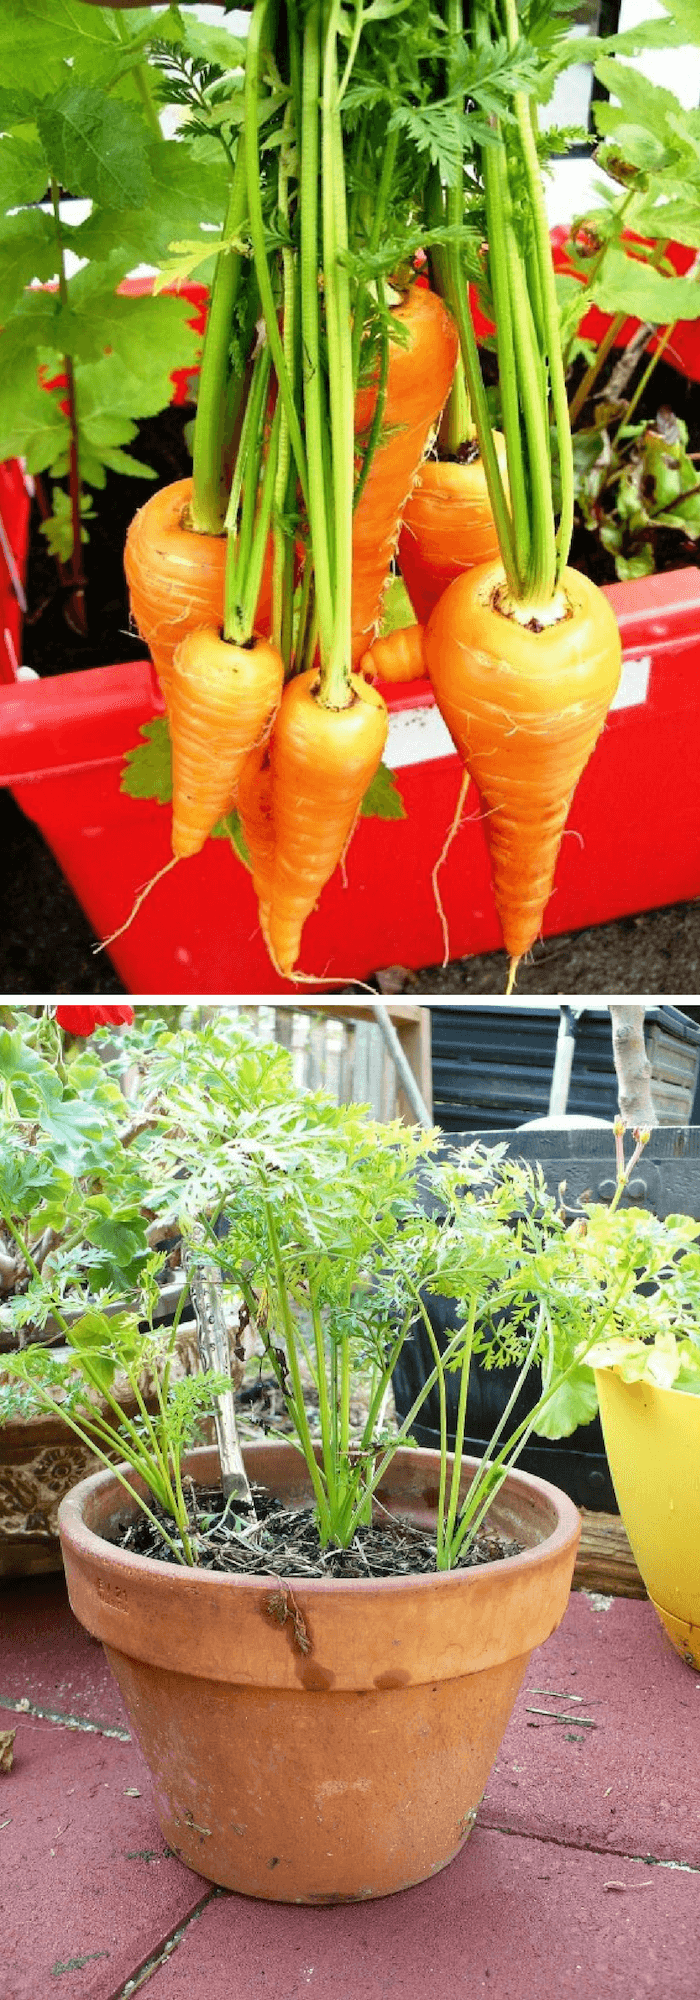 Growing carrots in pots